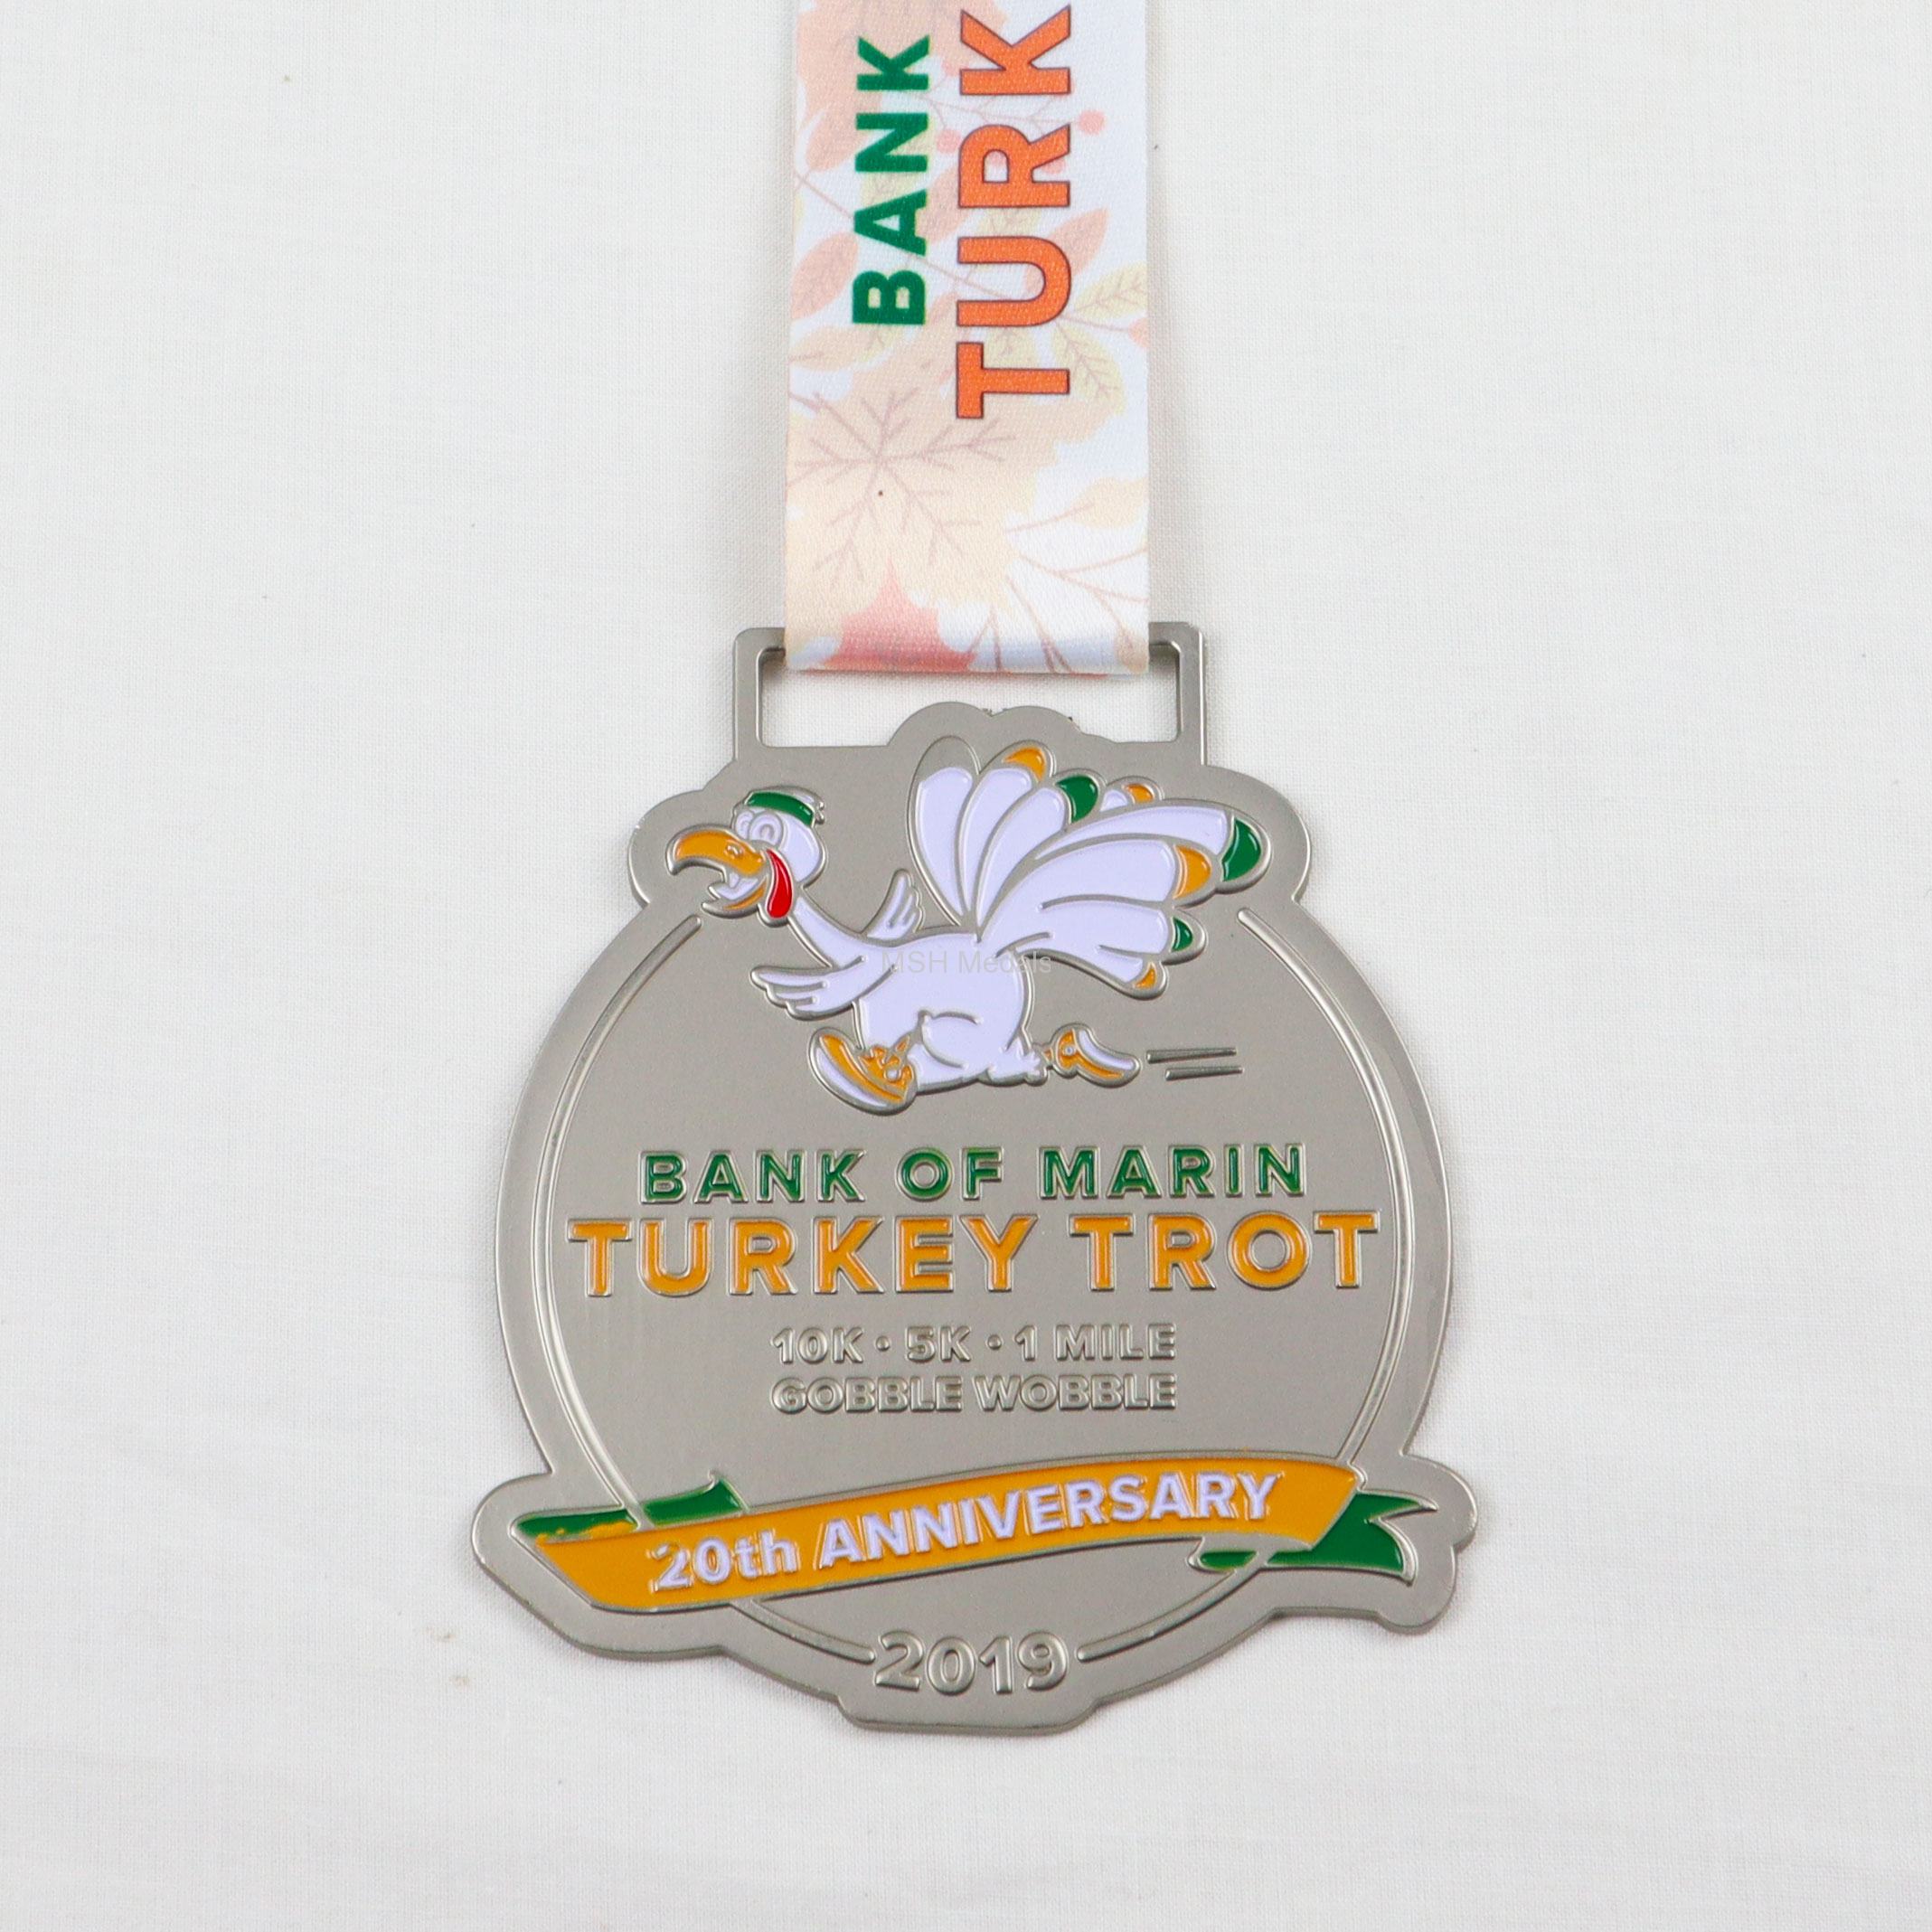 Marin turkey trot 10k 5k medal